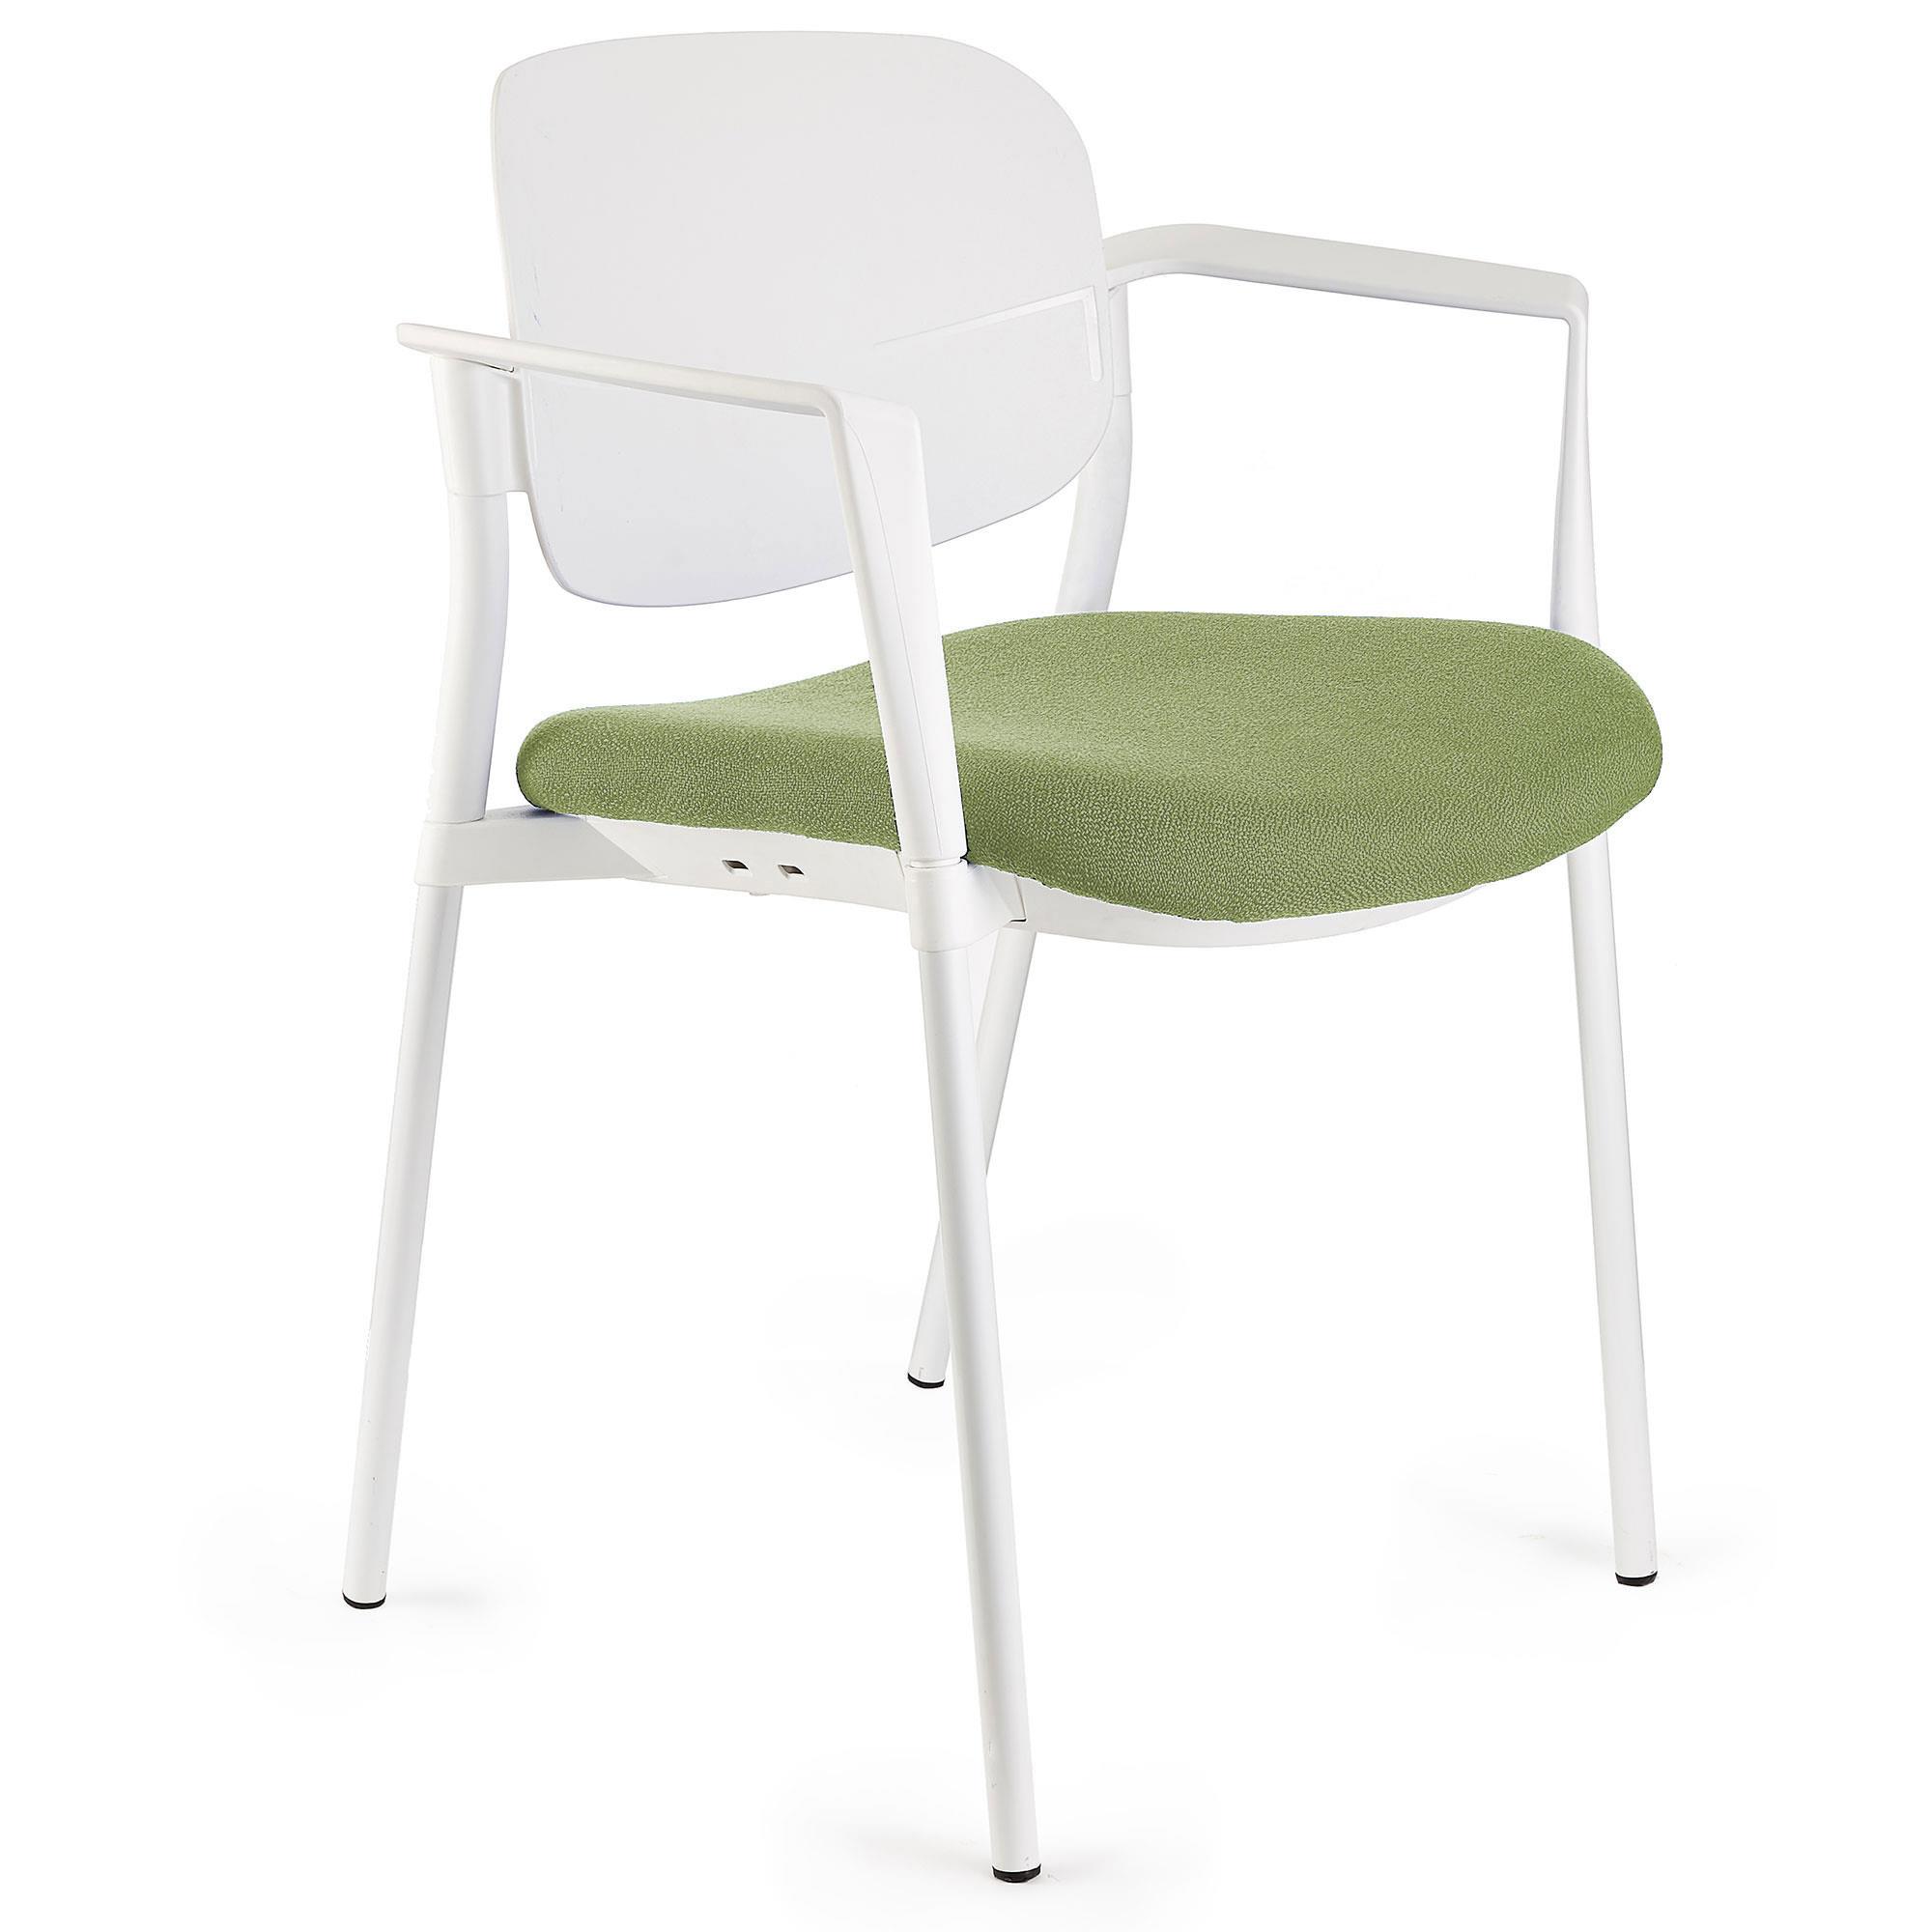 Cadeira de Visita ERIC COM BRAÇOS, Confortável e Empilhável, Cor Verde